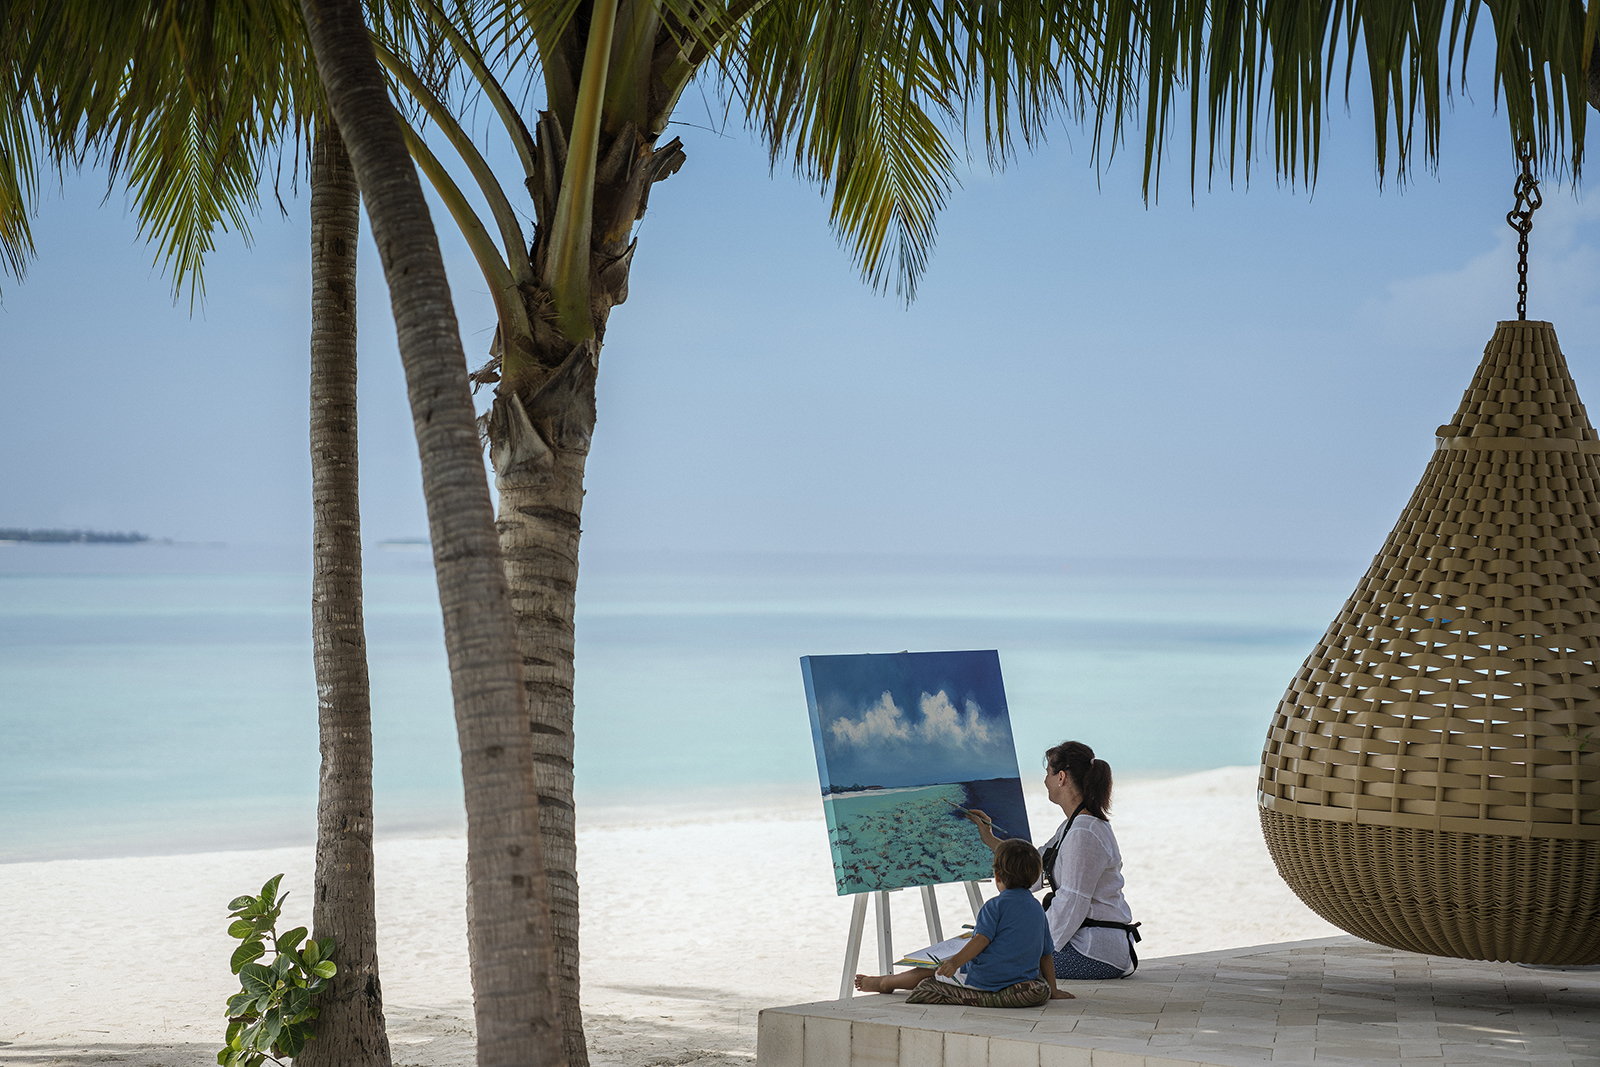  Anantarra Kihavah Beach Hut Spa Maldives - Art Print on Canvas  (24x16 inches , unframed) : Hogar y Cocina